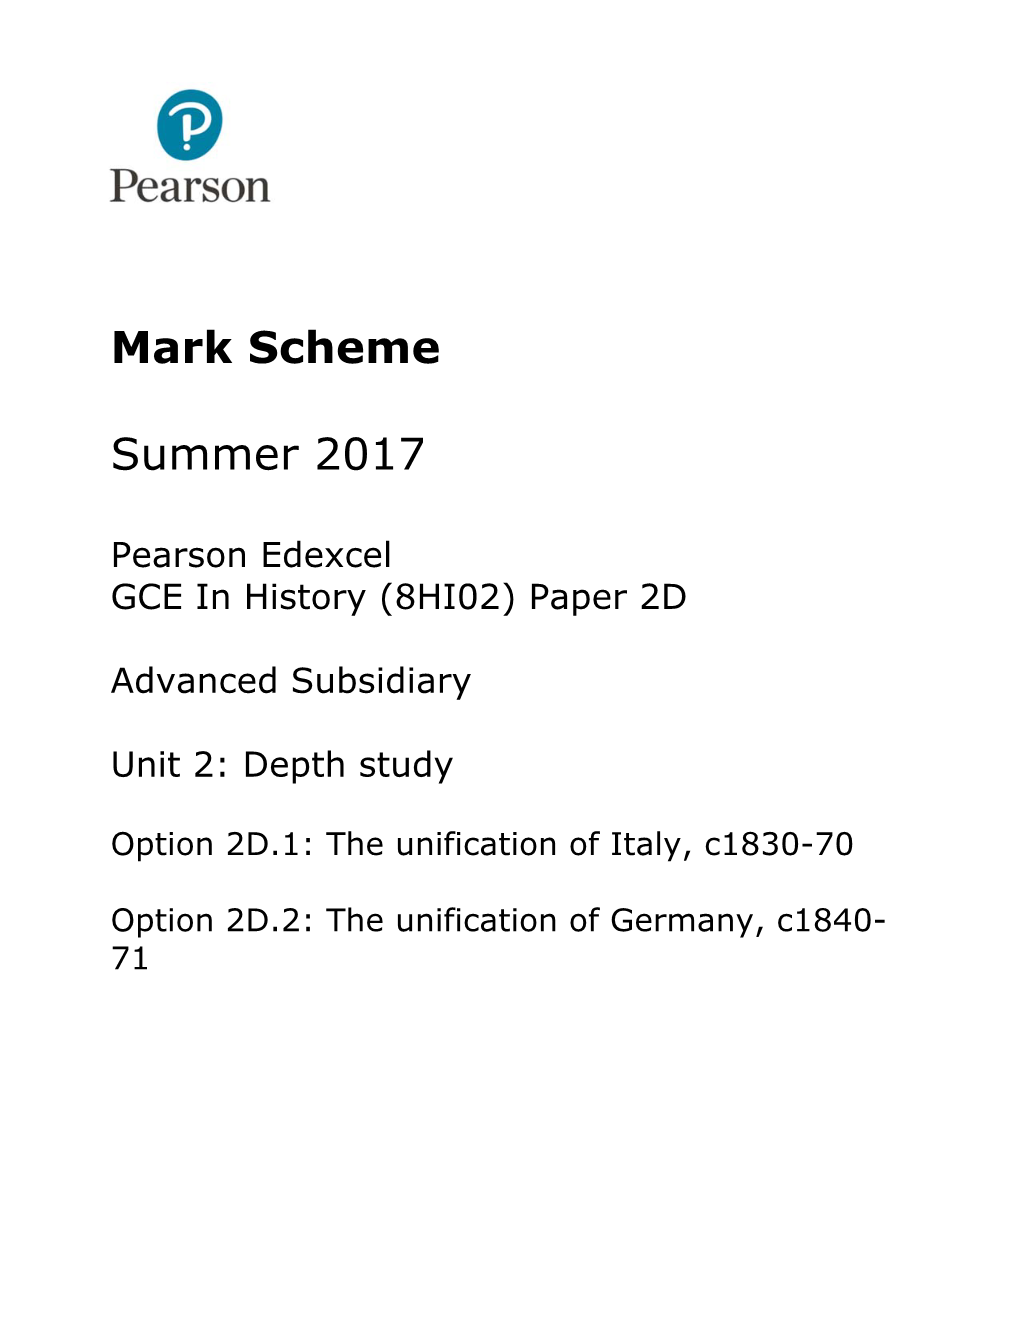 Mark Scheme Summer 2017